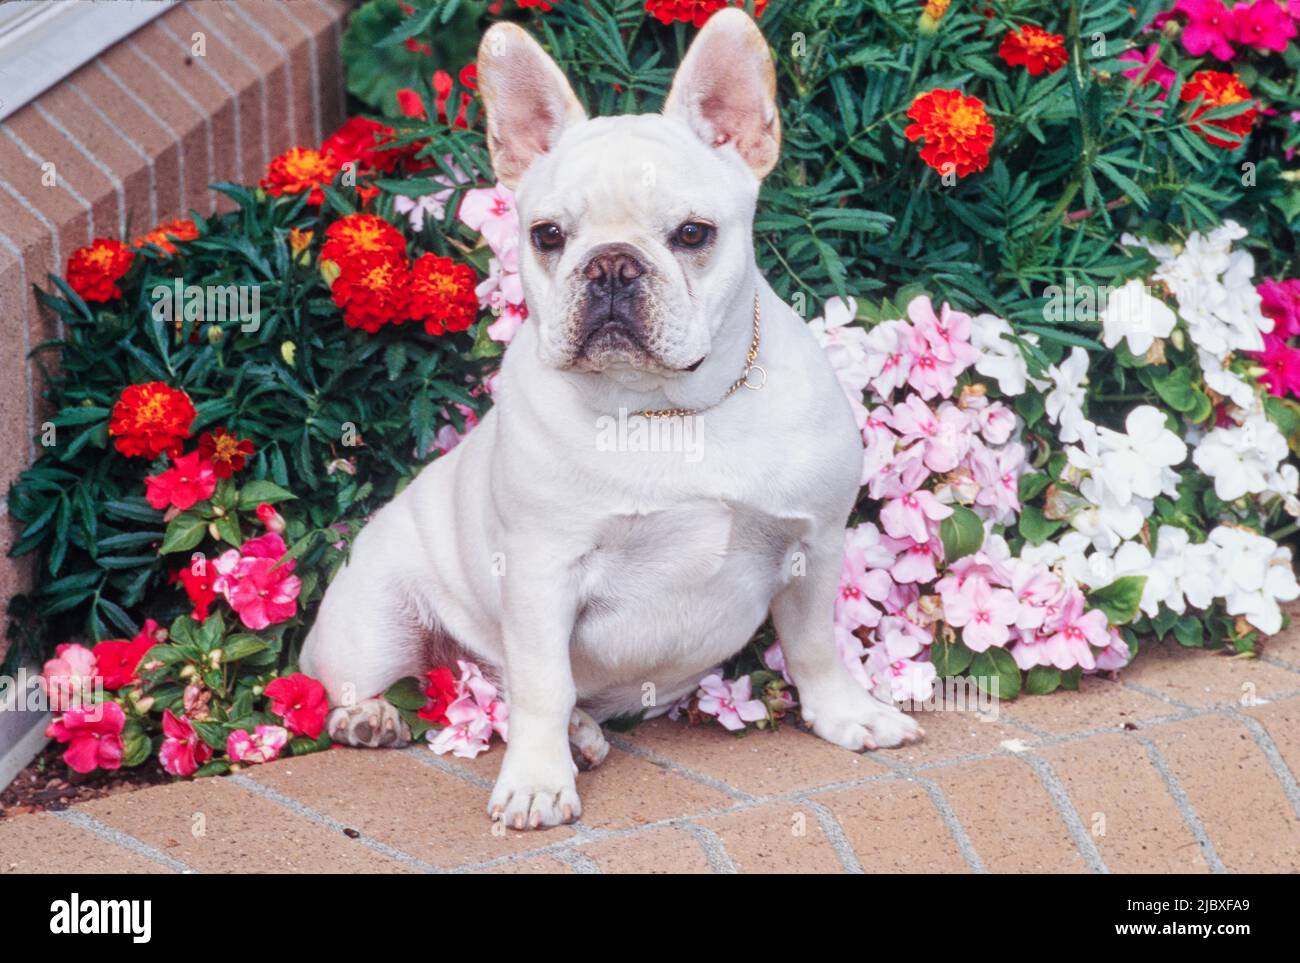 Un bulldog français de couleur crème assis sur un jardinier en briques rempli de fleurs rouges, roses et blanches Banque D'Images